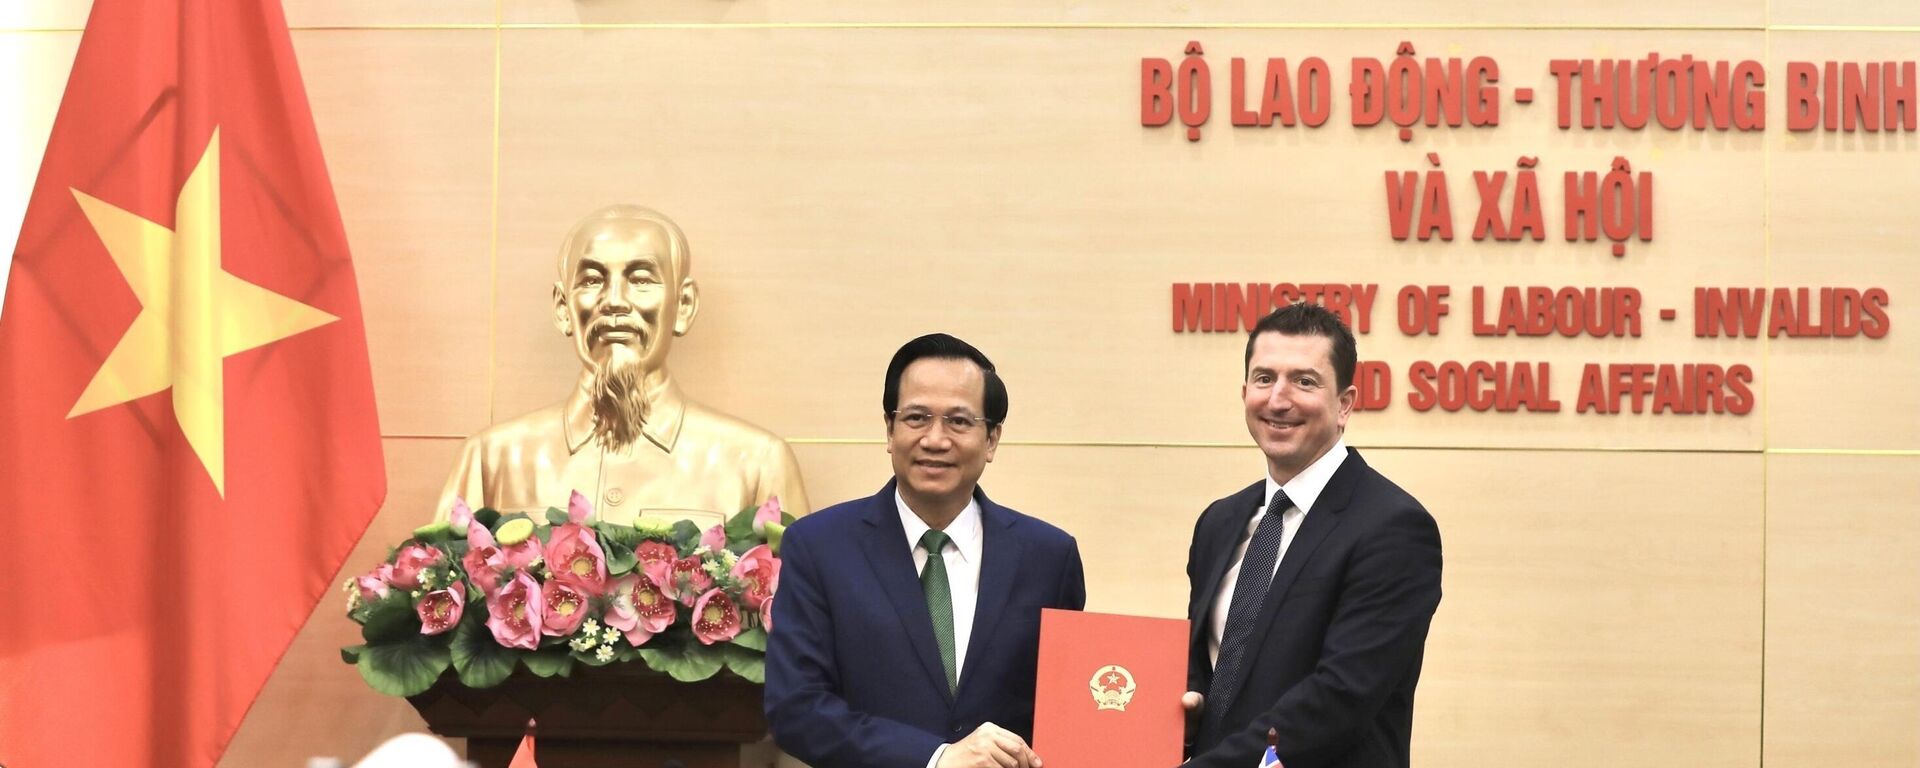 Việt Nam và Australia ký bản ghi nhớ về hỗ trợ công dân Việt Nam tham gia chương trình lao động nông nghiệp Australia - Sputnik Việt Nam, 1920, 28.03.2022